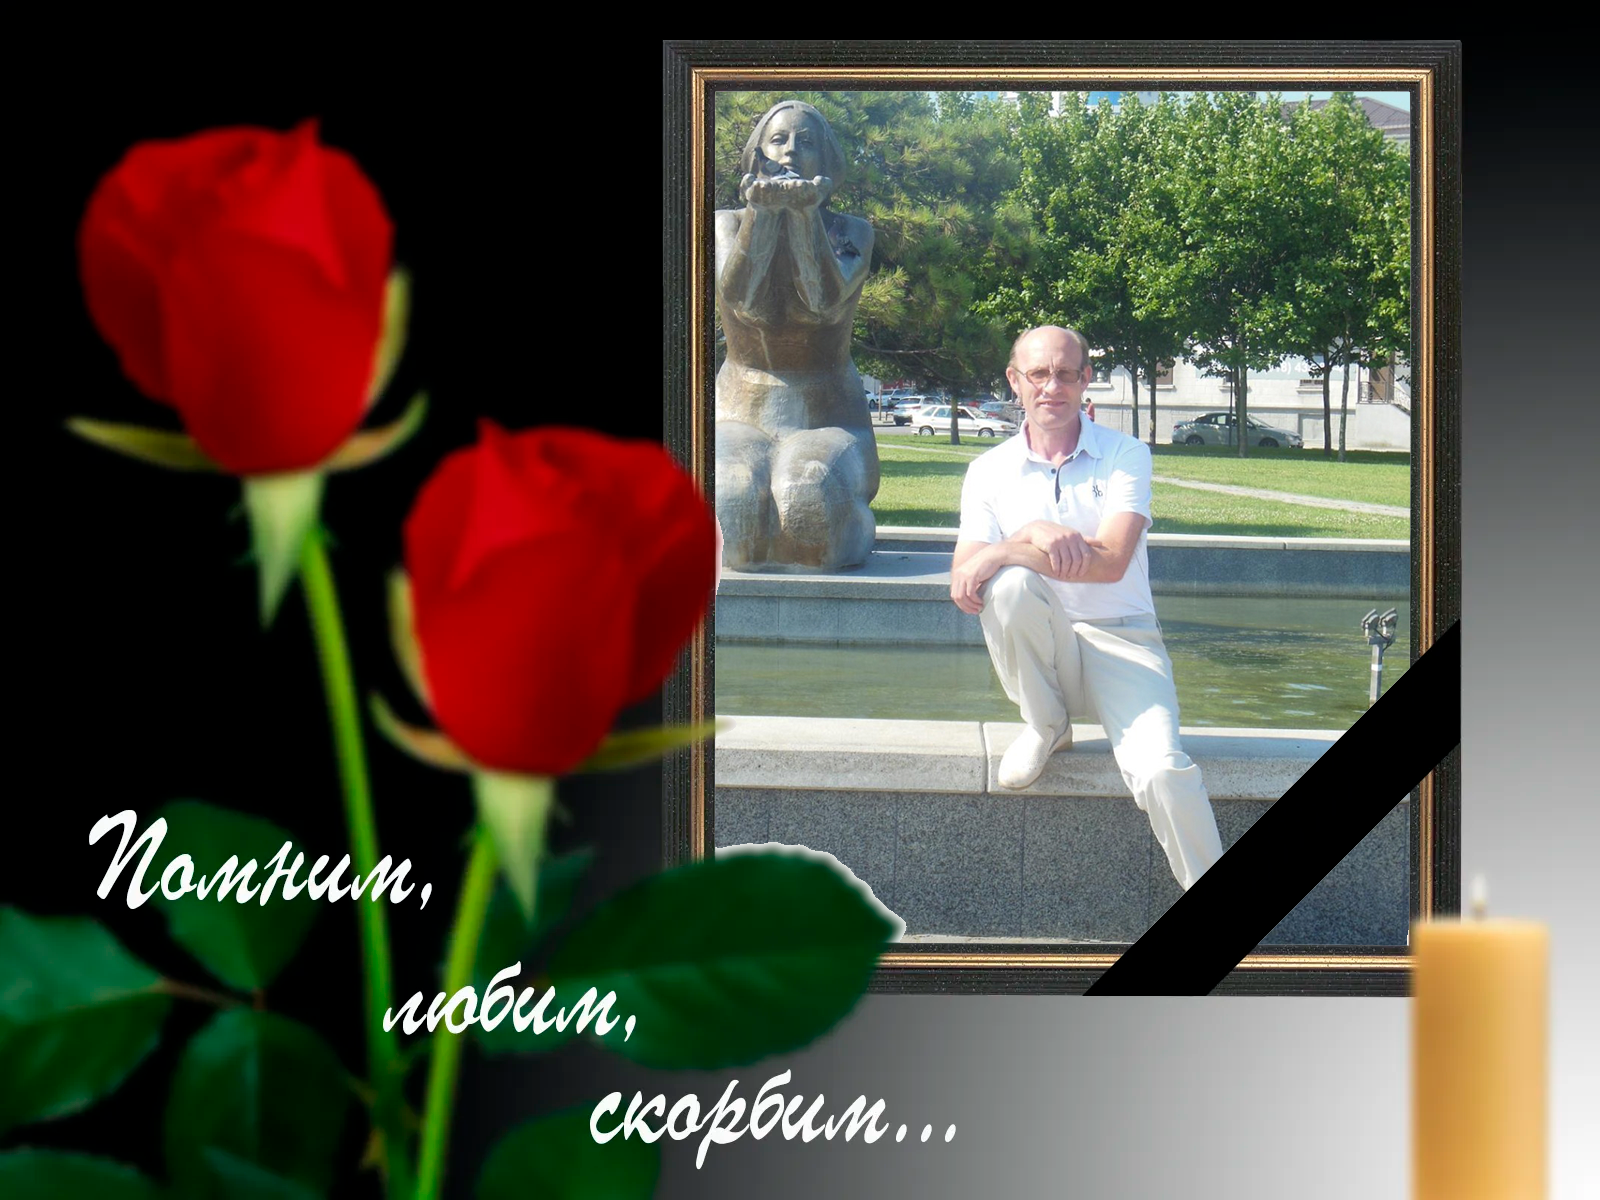 Департамент соцзащиты глубоко скорбит в связи со смертью Чумакова Сергея Николаевича и выражает соболезнование родным и близким